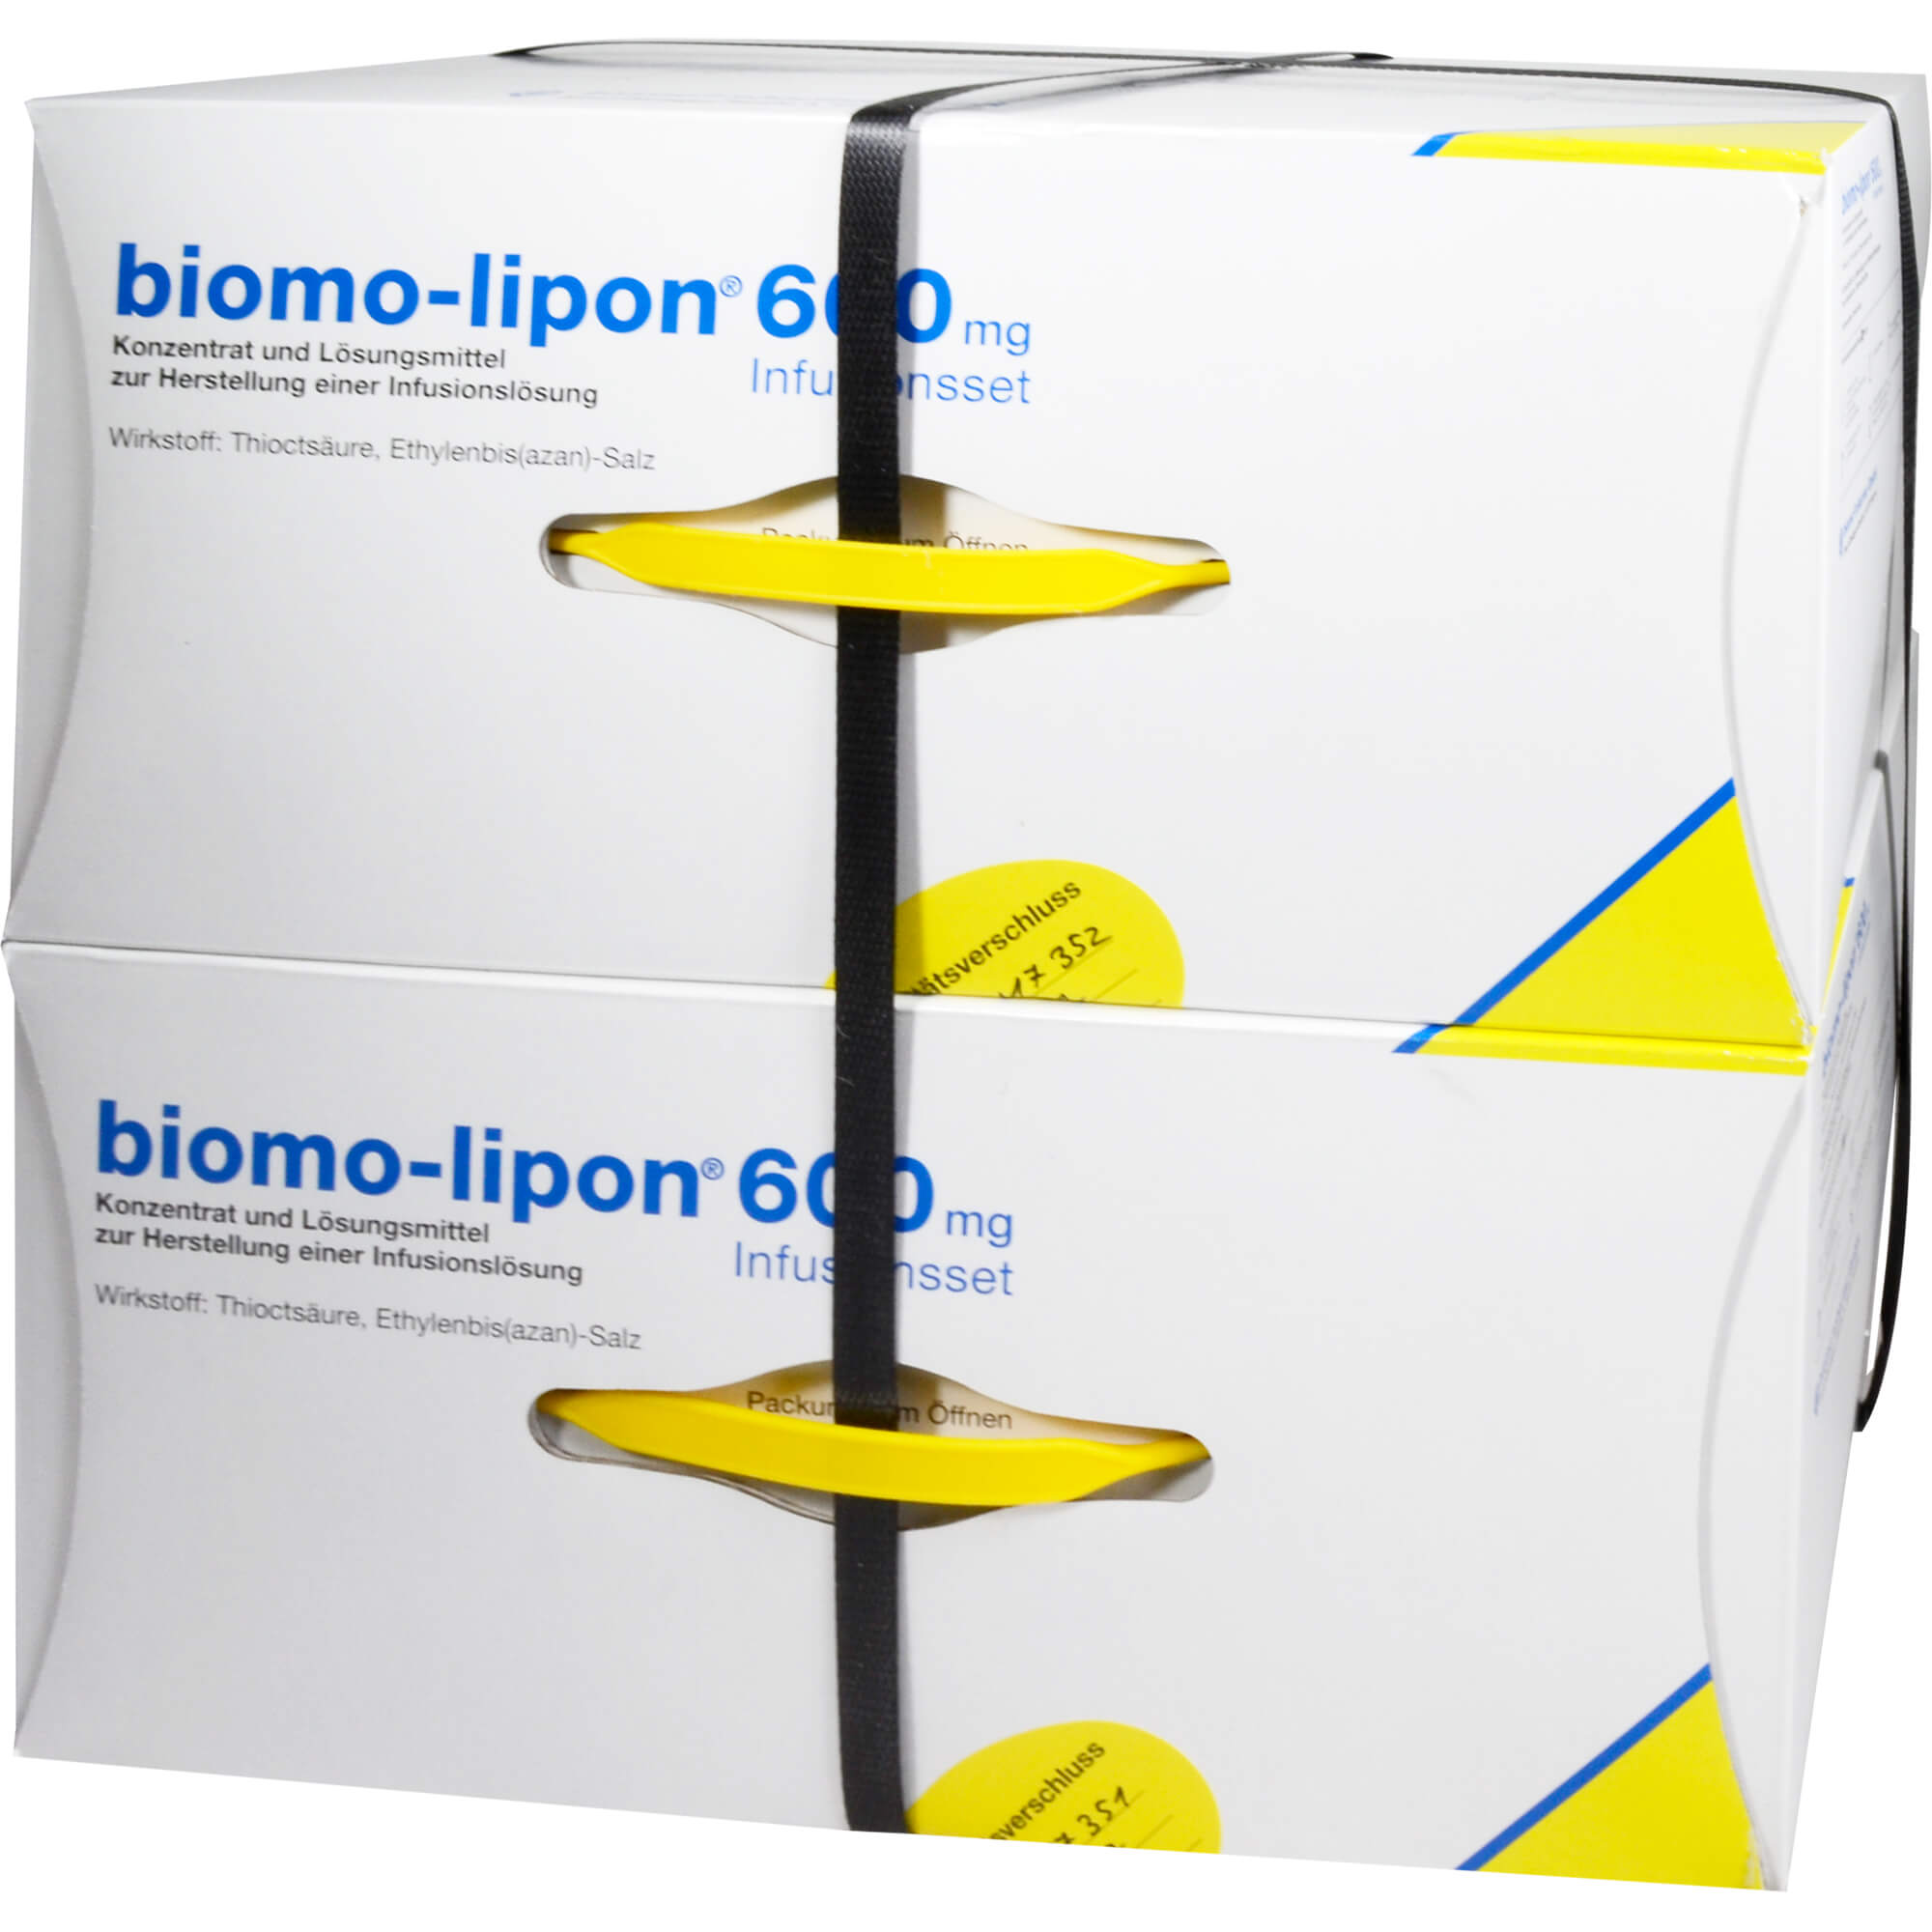 BIOMO LIPON 600 mg Infusionsset Amp.